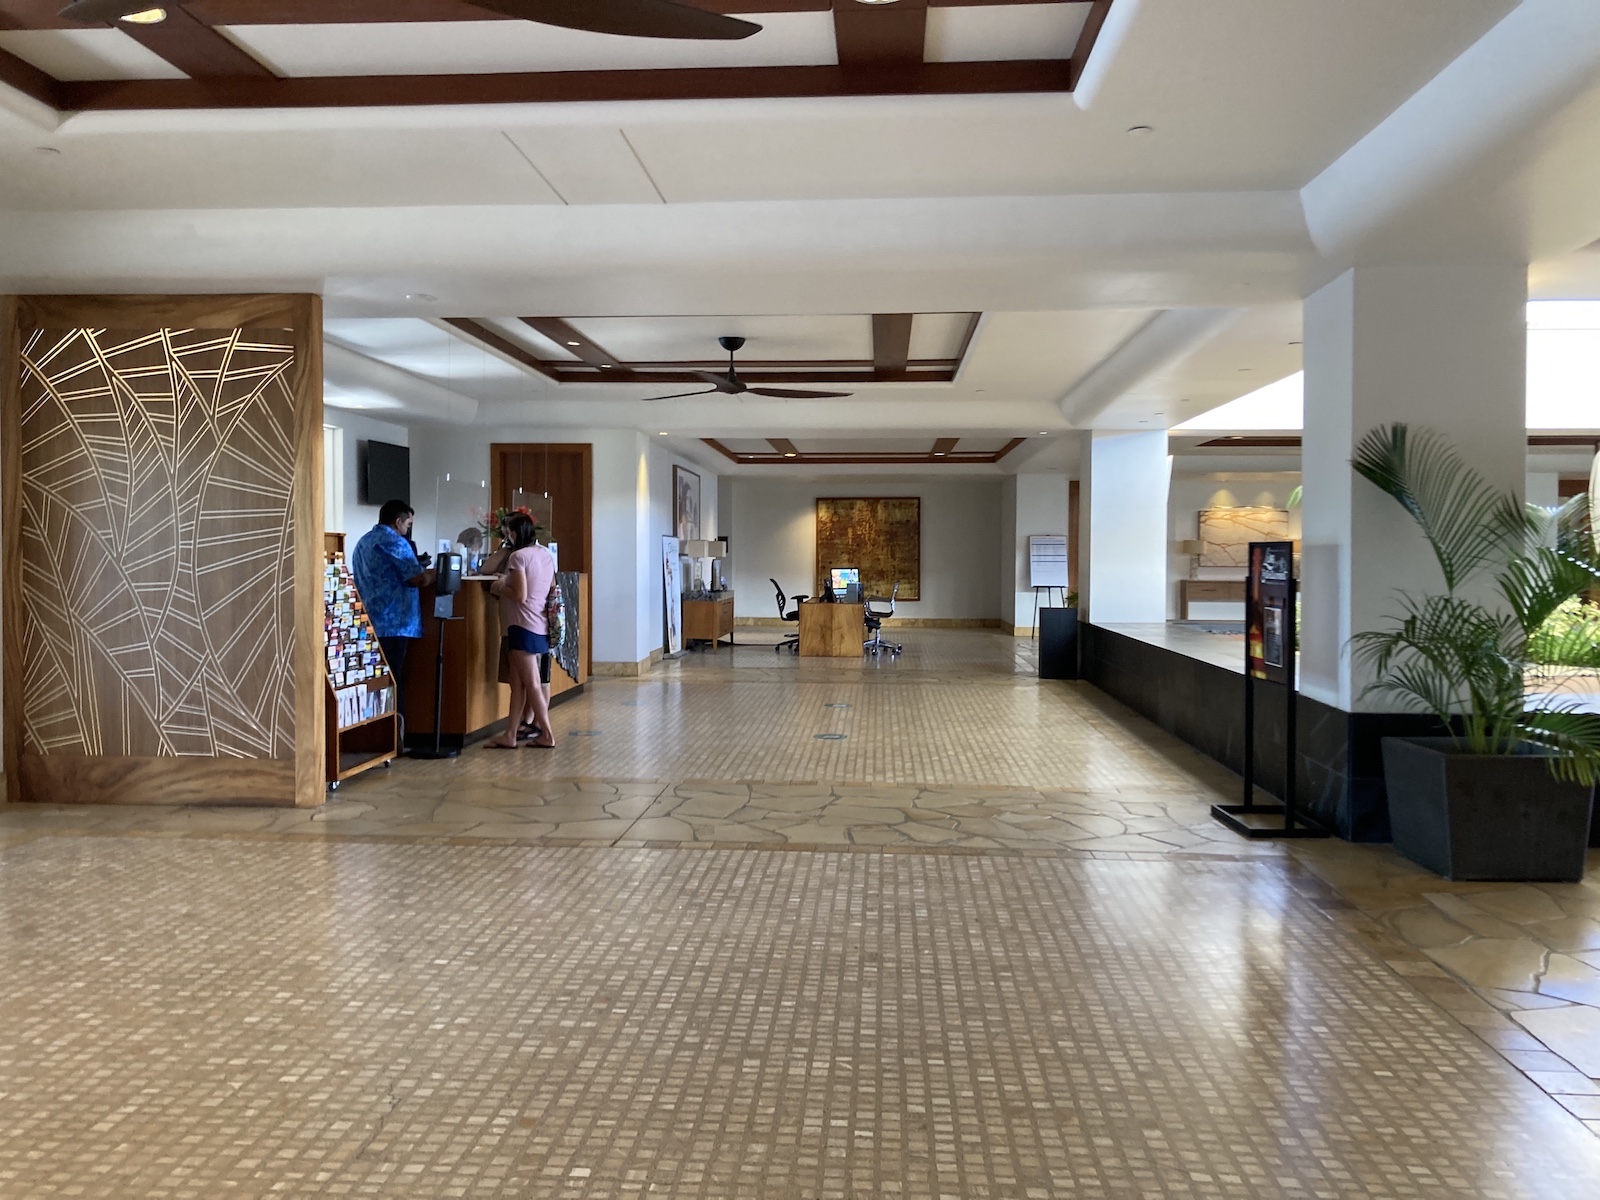 Photo of lobby area and activities desk at Waikoloa Beach Marriott Resort Spa